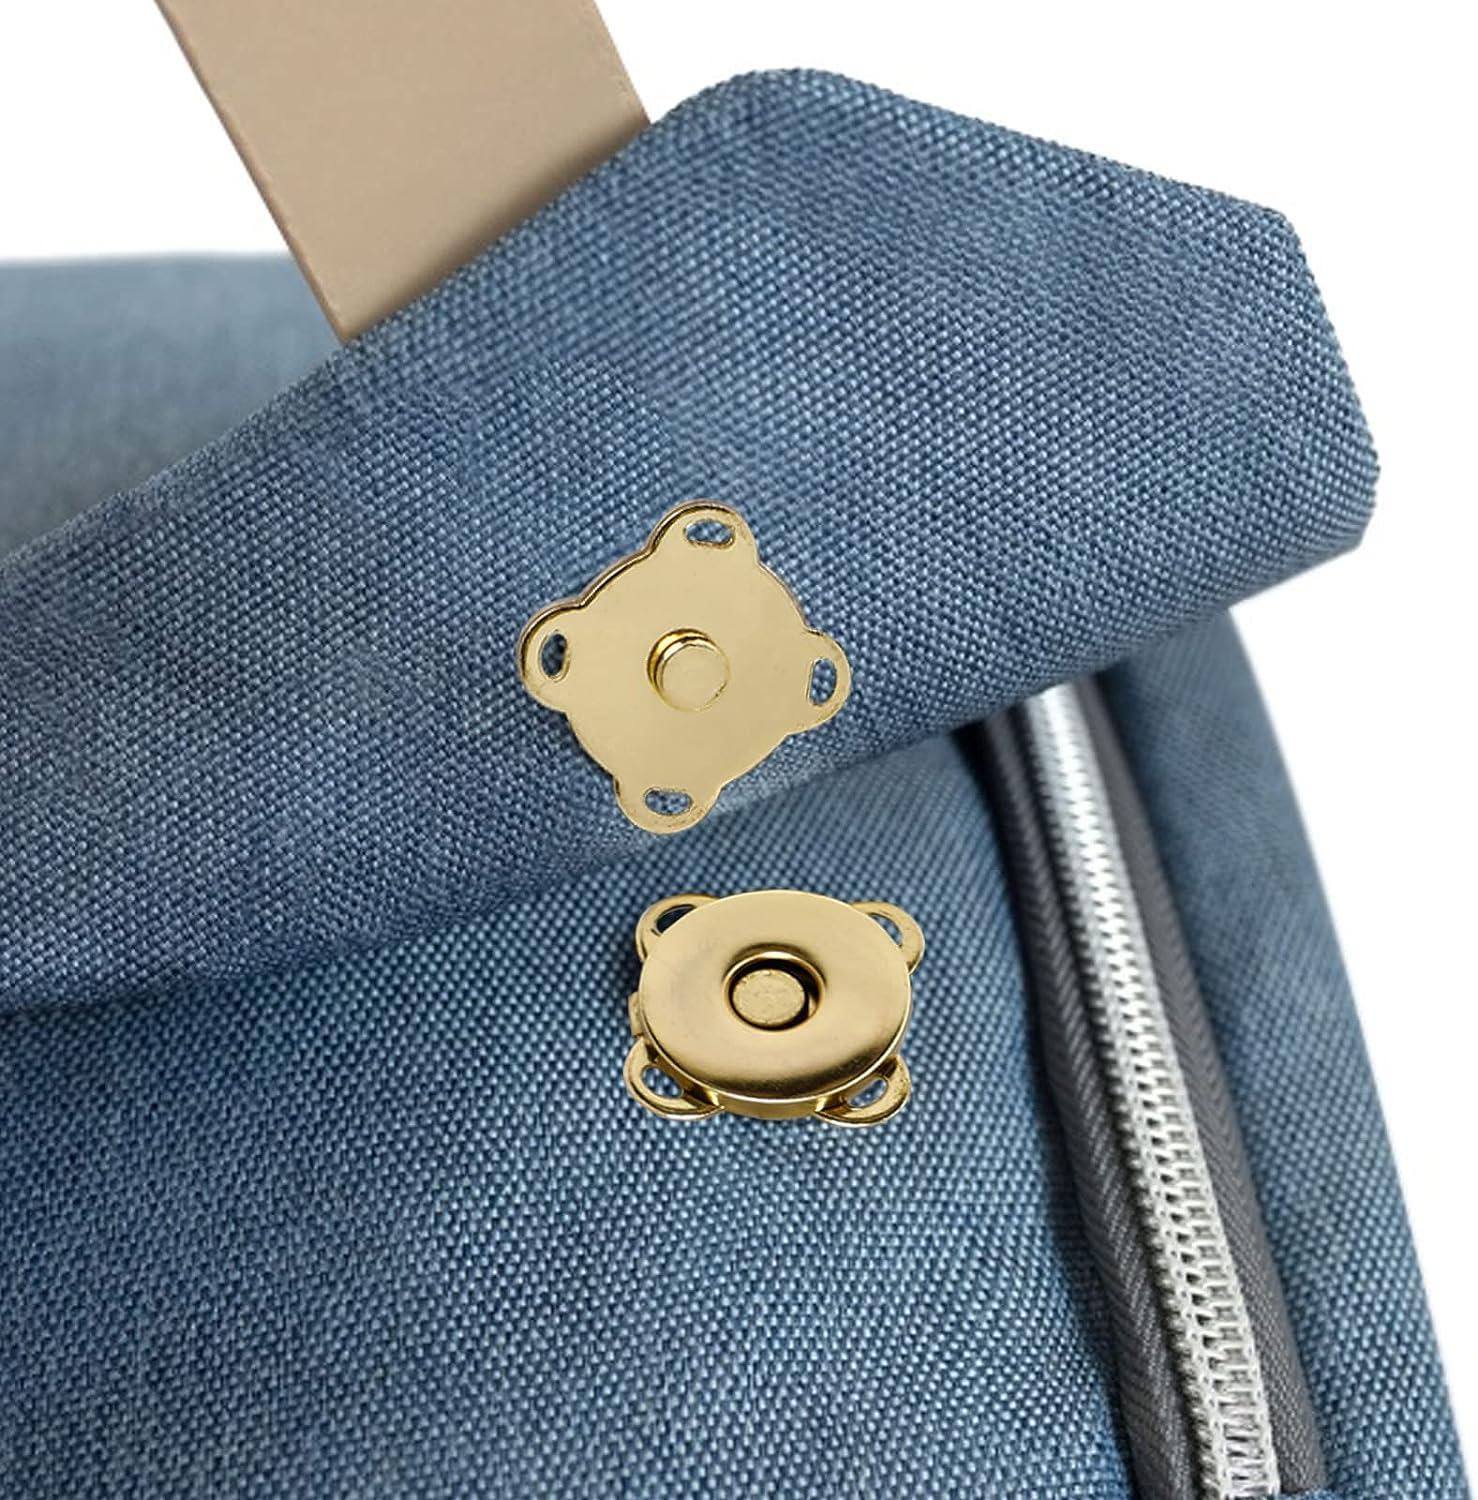 30 Piece Plum Magnetic Snap Buttons for Clothes Purse Handbag